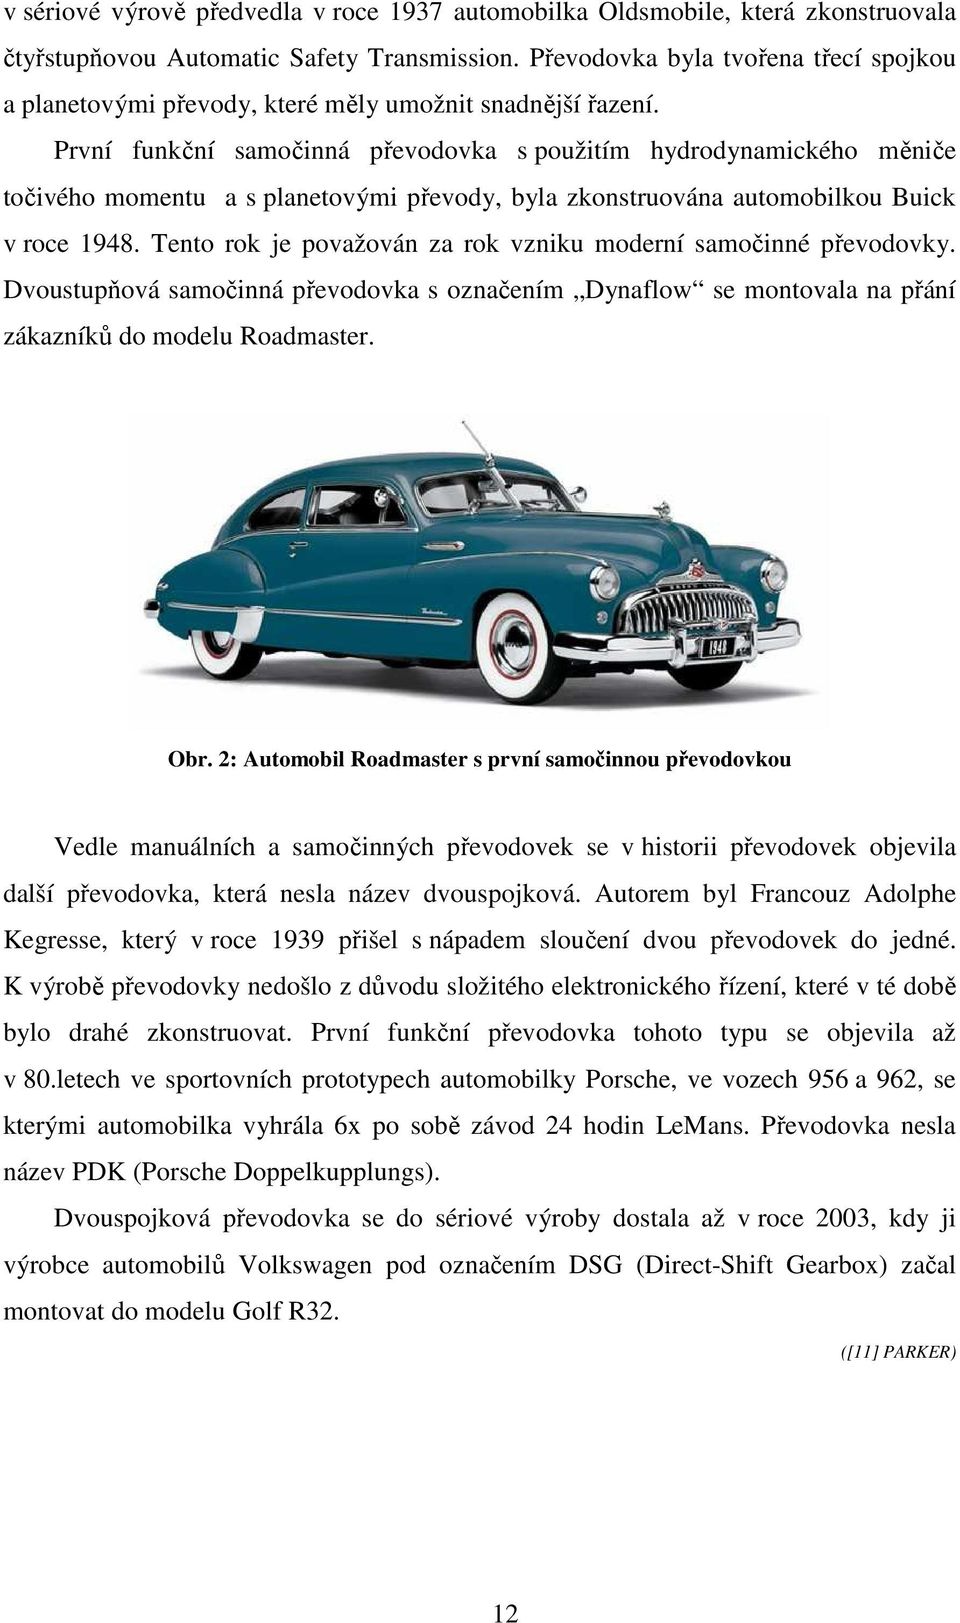 První funkční samočinná převodovka s použitím hydrodynamického měniče točivého momentu a s planetovými převody, byla zkonstruována automobilkou Buick v roce 1948.